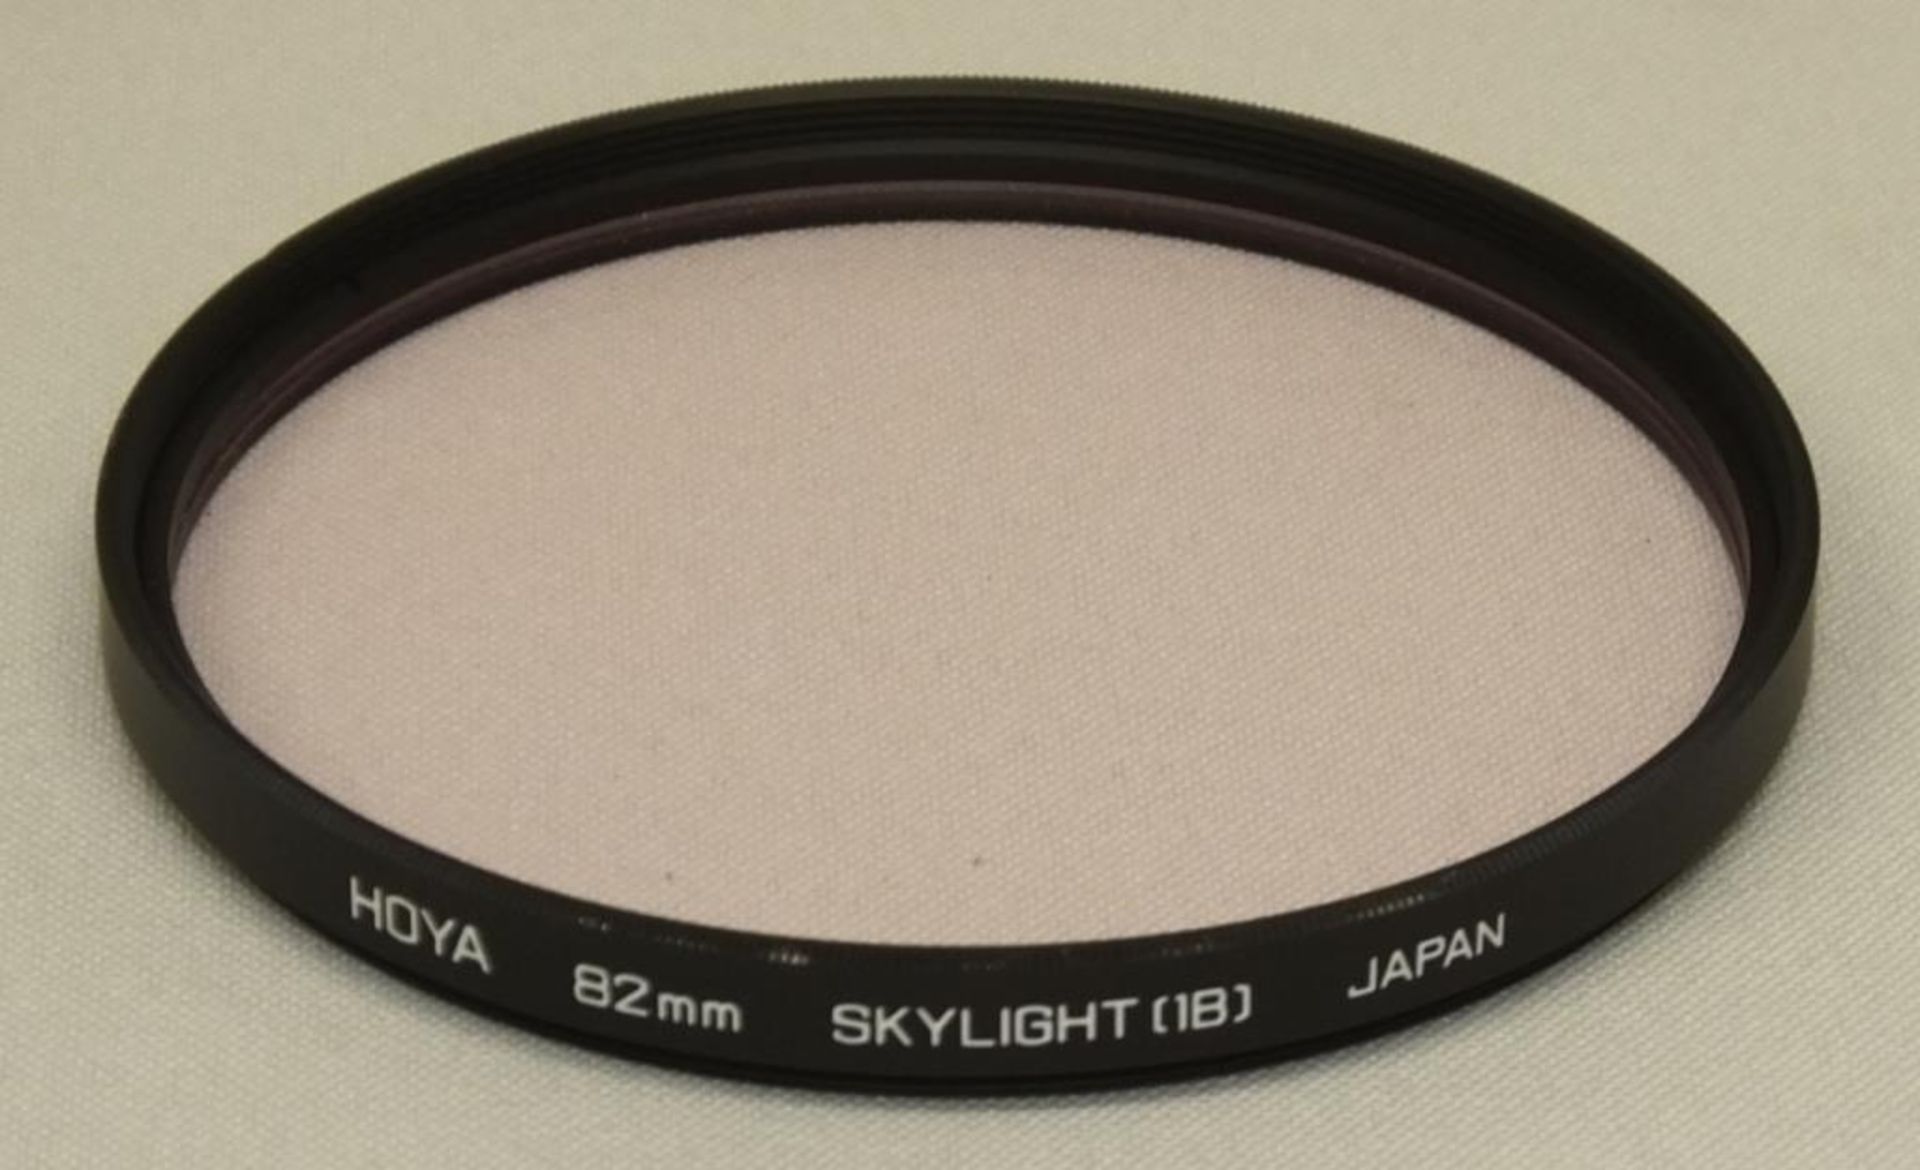 Nikon ED AF Nikkor 300mm - 1:4 Lens - Serial No. 214192 with HOYA 82mm Skylight (1B) Filter - Image 5 of 5